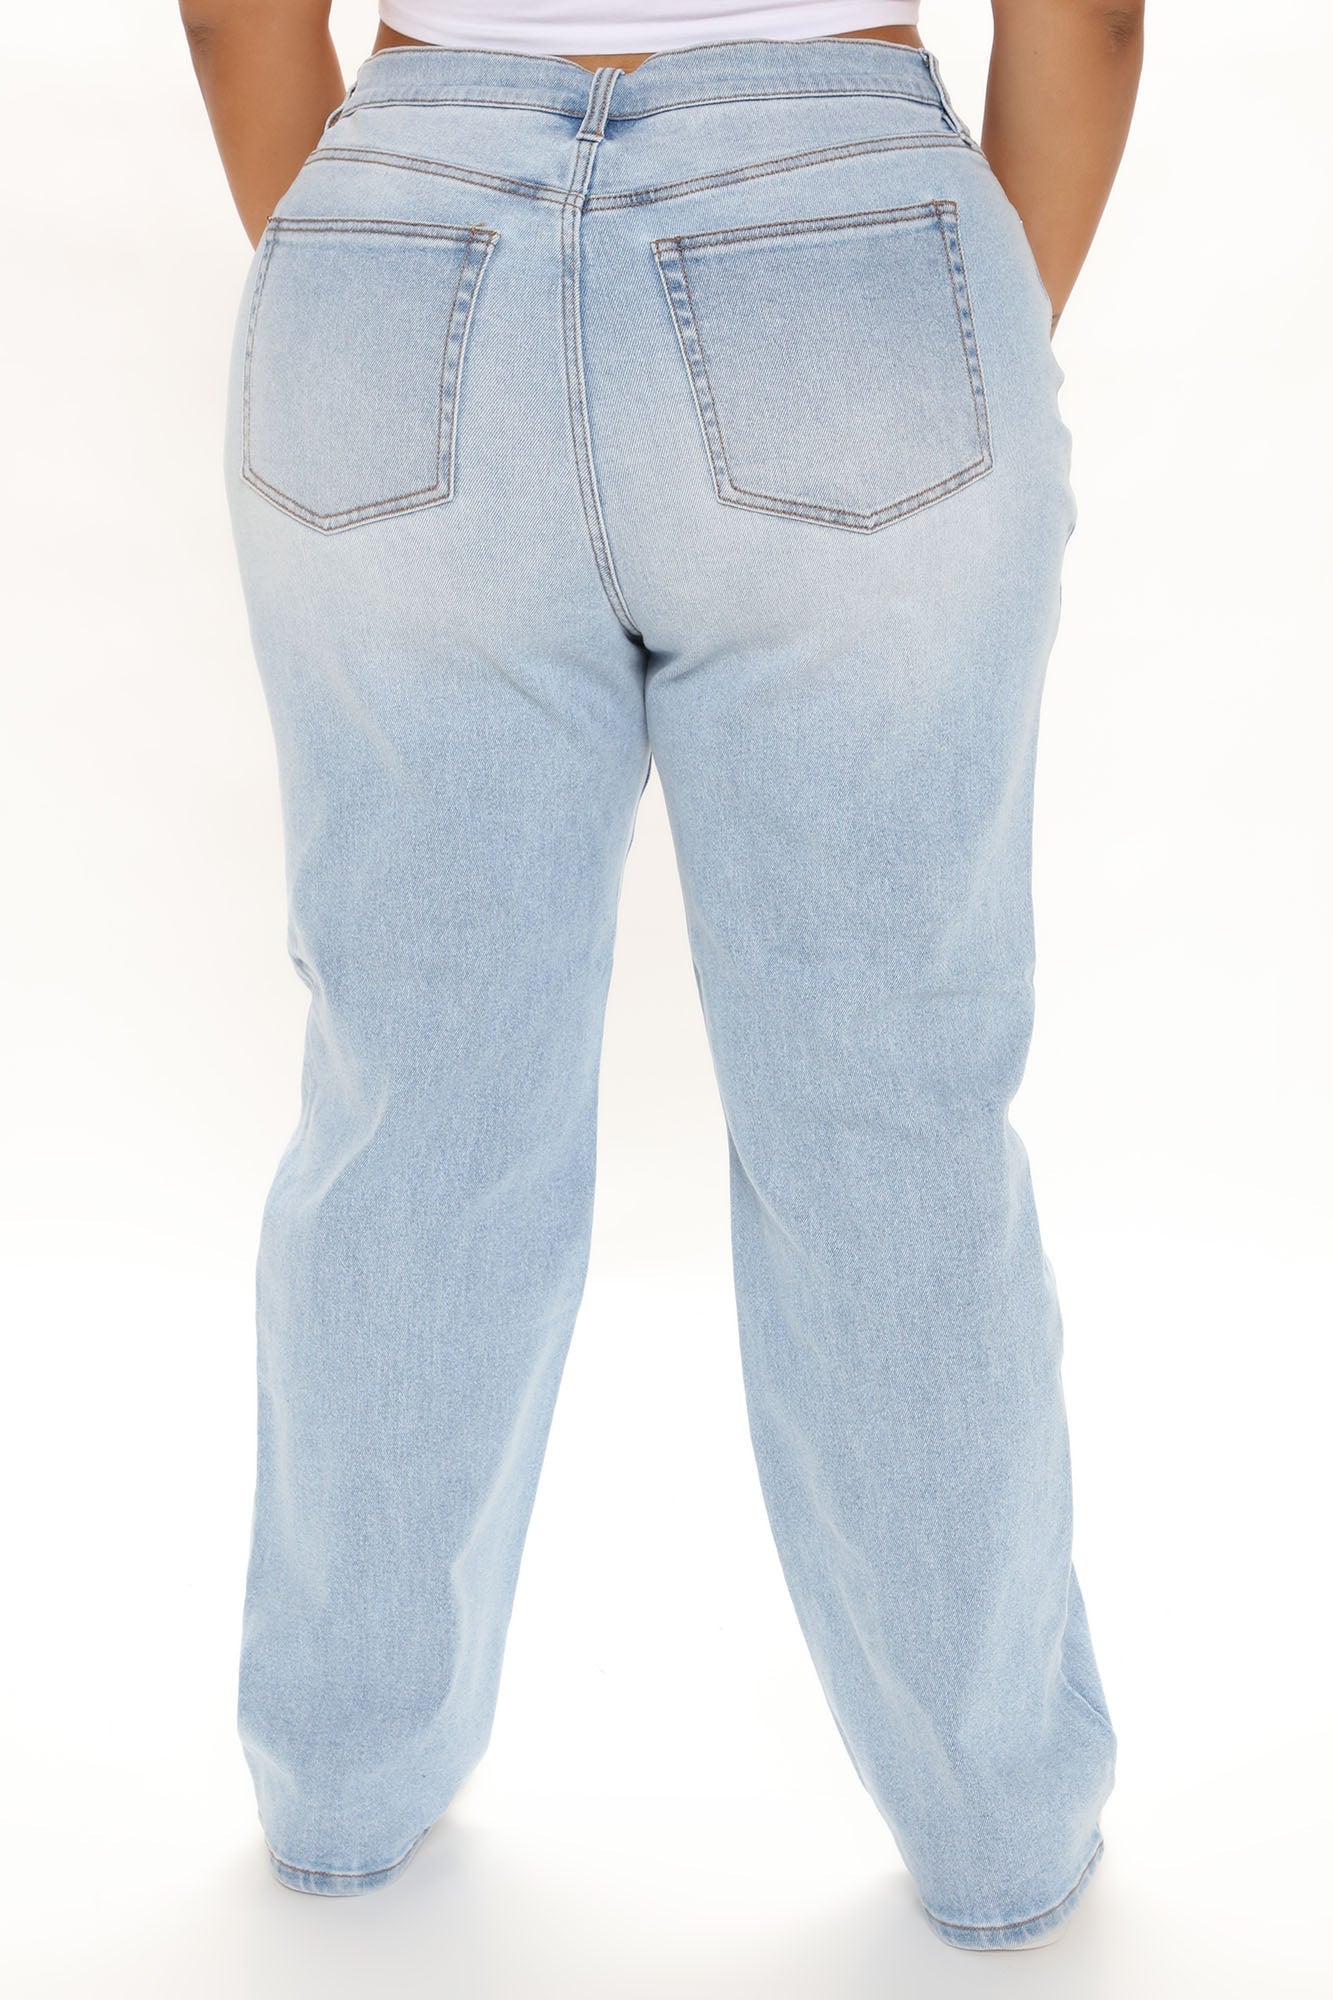 Vibin Vintage 90's Slacker Straight Leg Jeans - Light Blue Wash – InsStreet